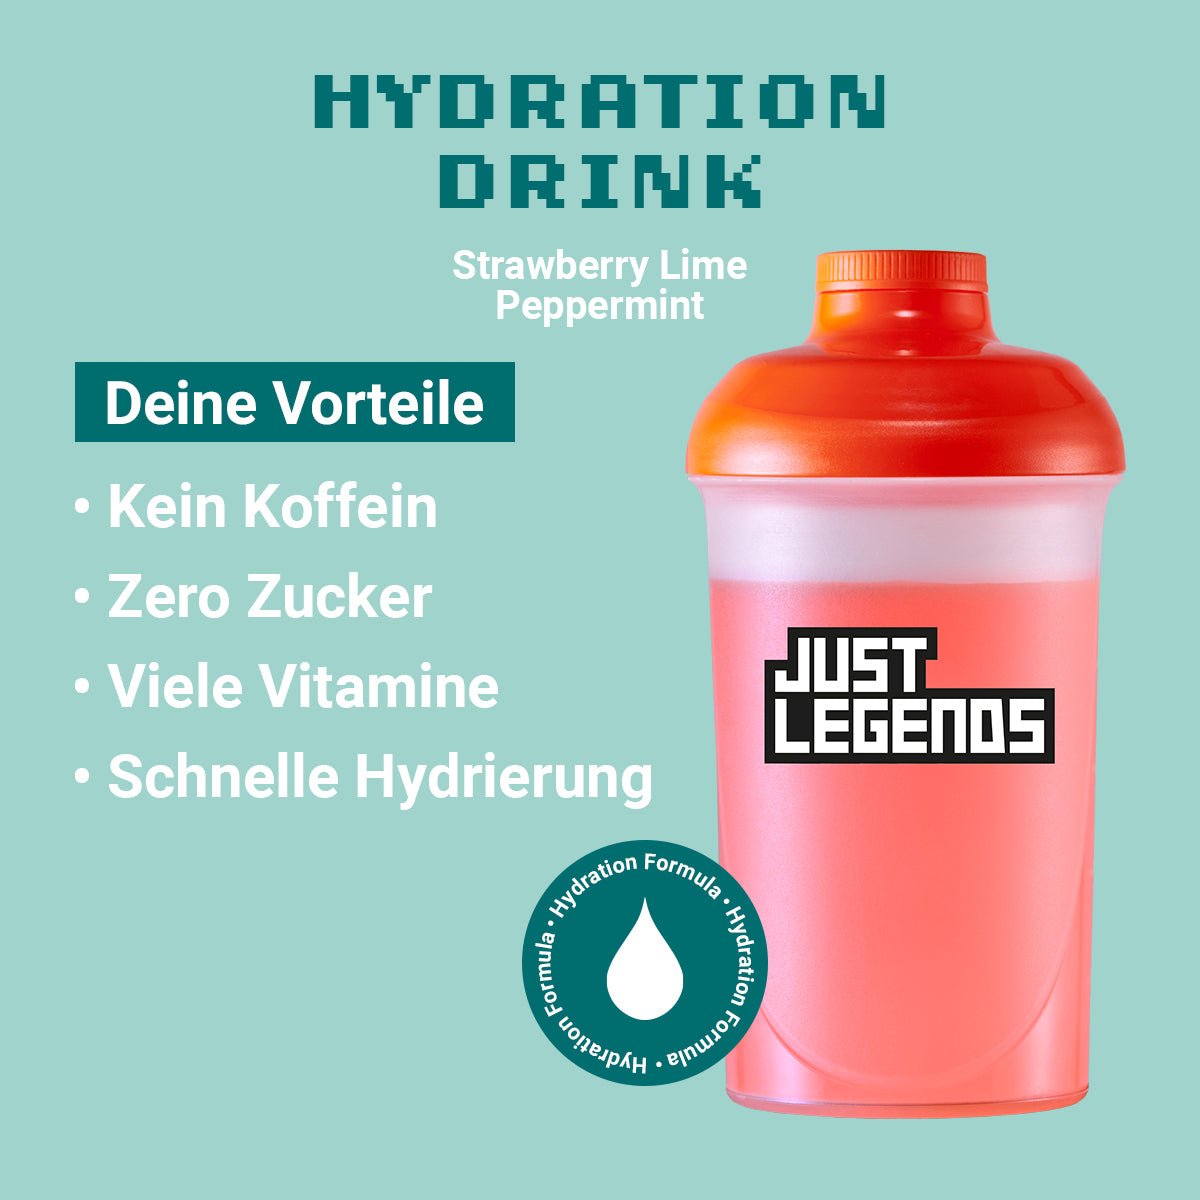 Just Legends Hydration DrinkStrawberry Lime Peppermint | Funktionaler, veganer Hydration Drink auf Pulverbasis ohne Zucker, mit wenig Kalorien, vielen Vitaminen und natürlichen Aromen.